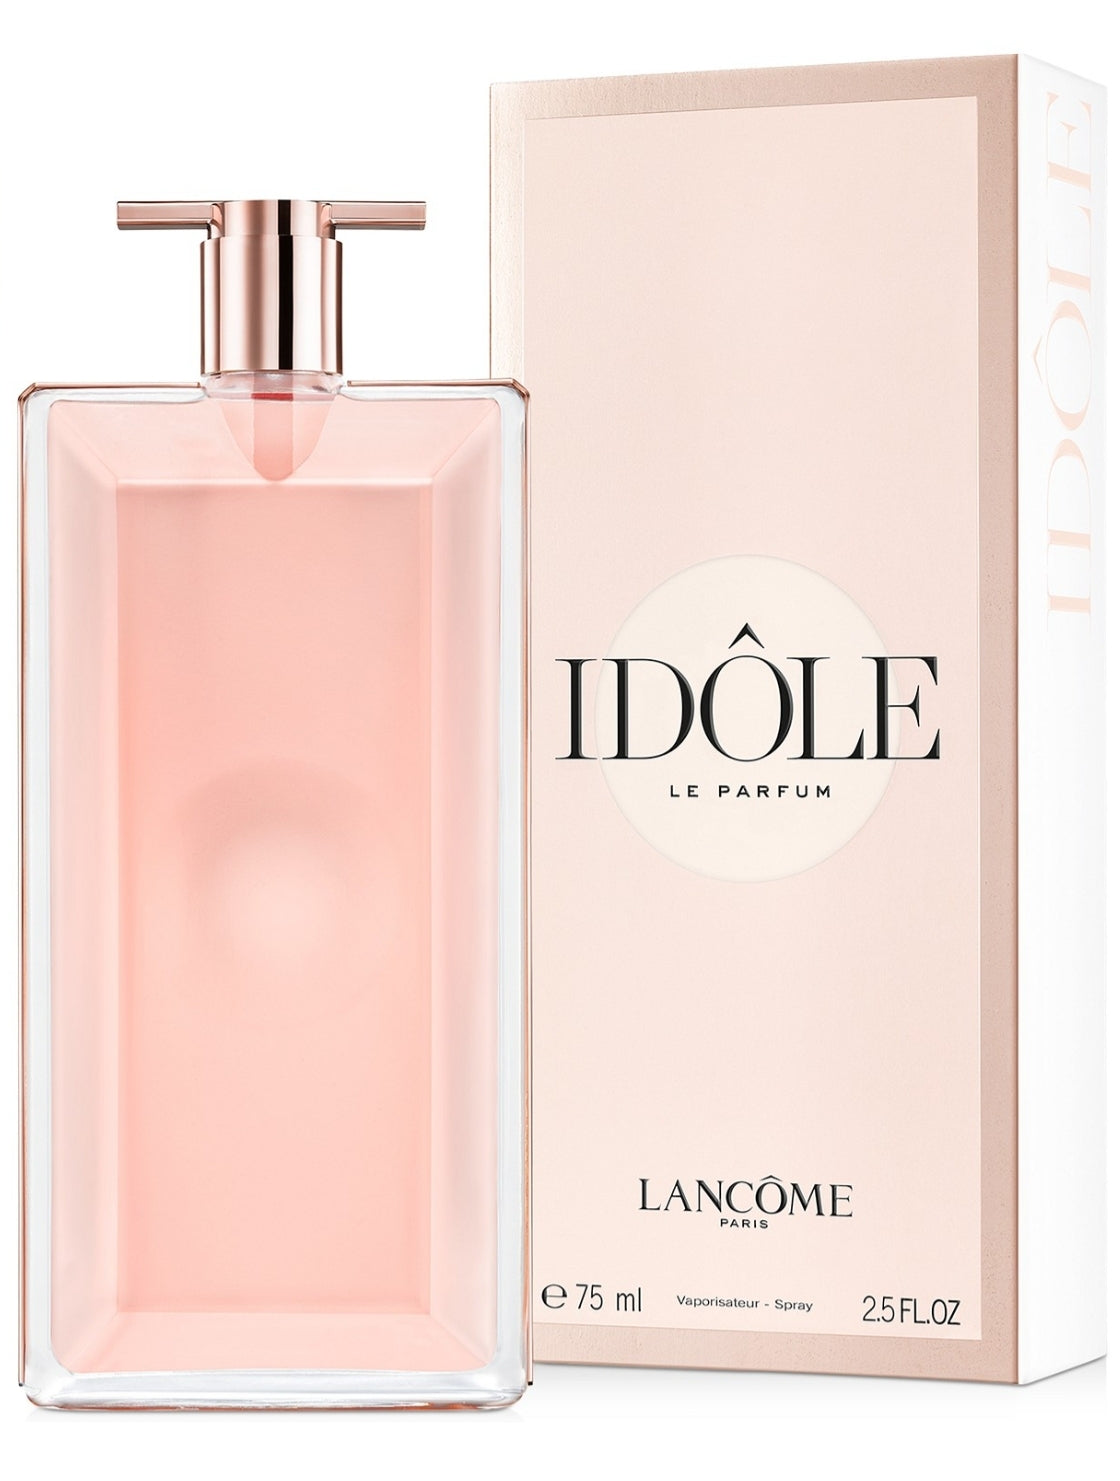 Lancôme Idôle Le Parfum Fragrance Collection